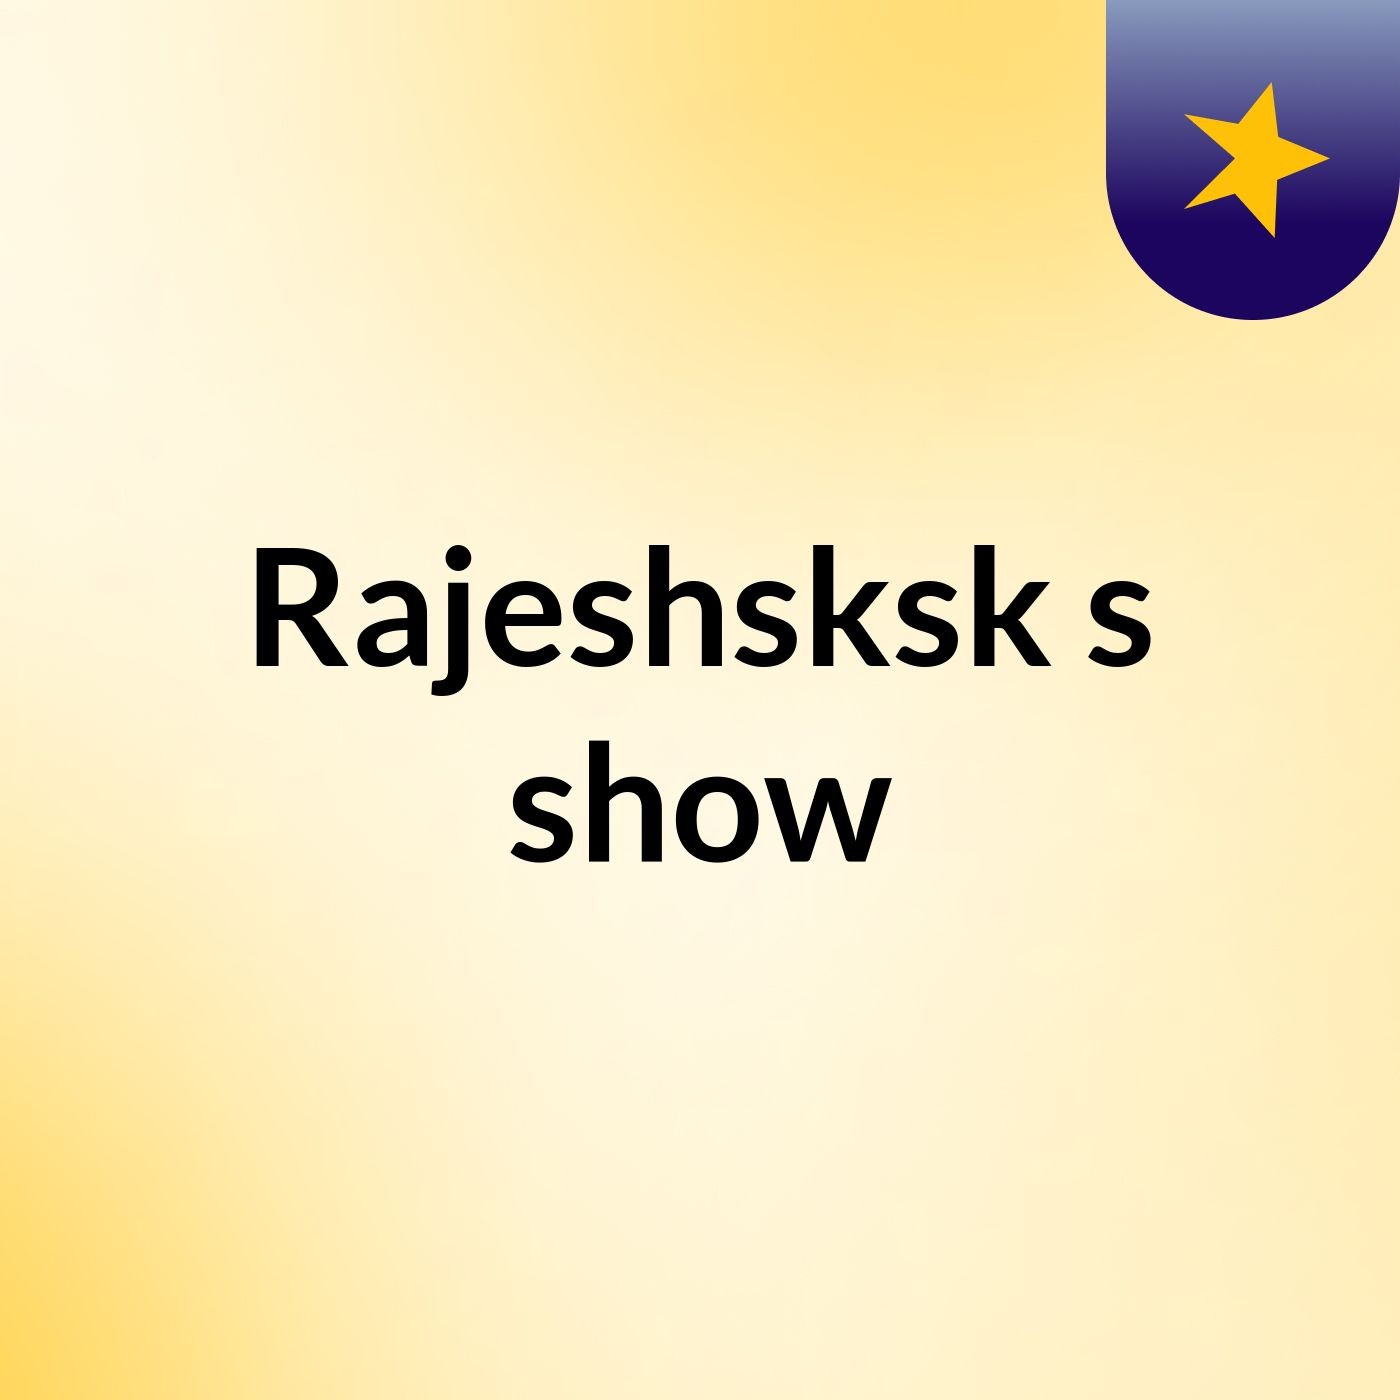 Rajeshsksk's show